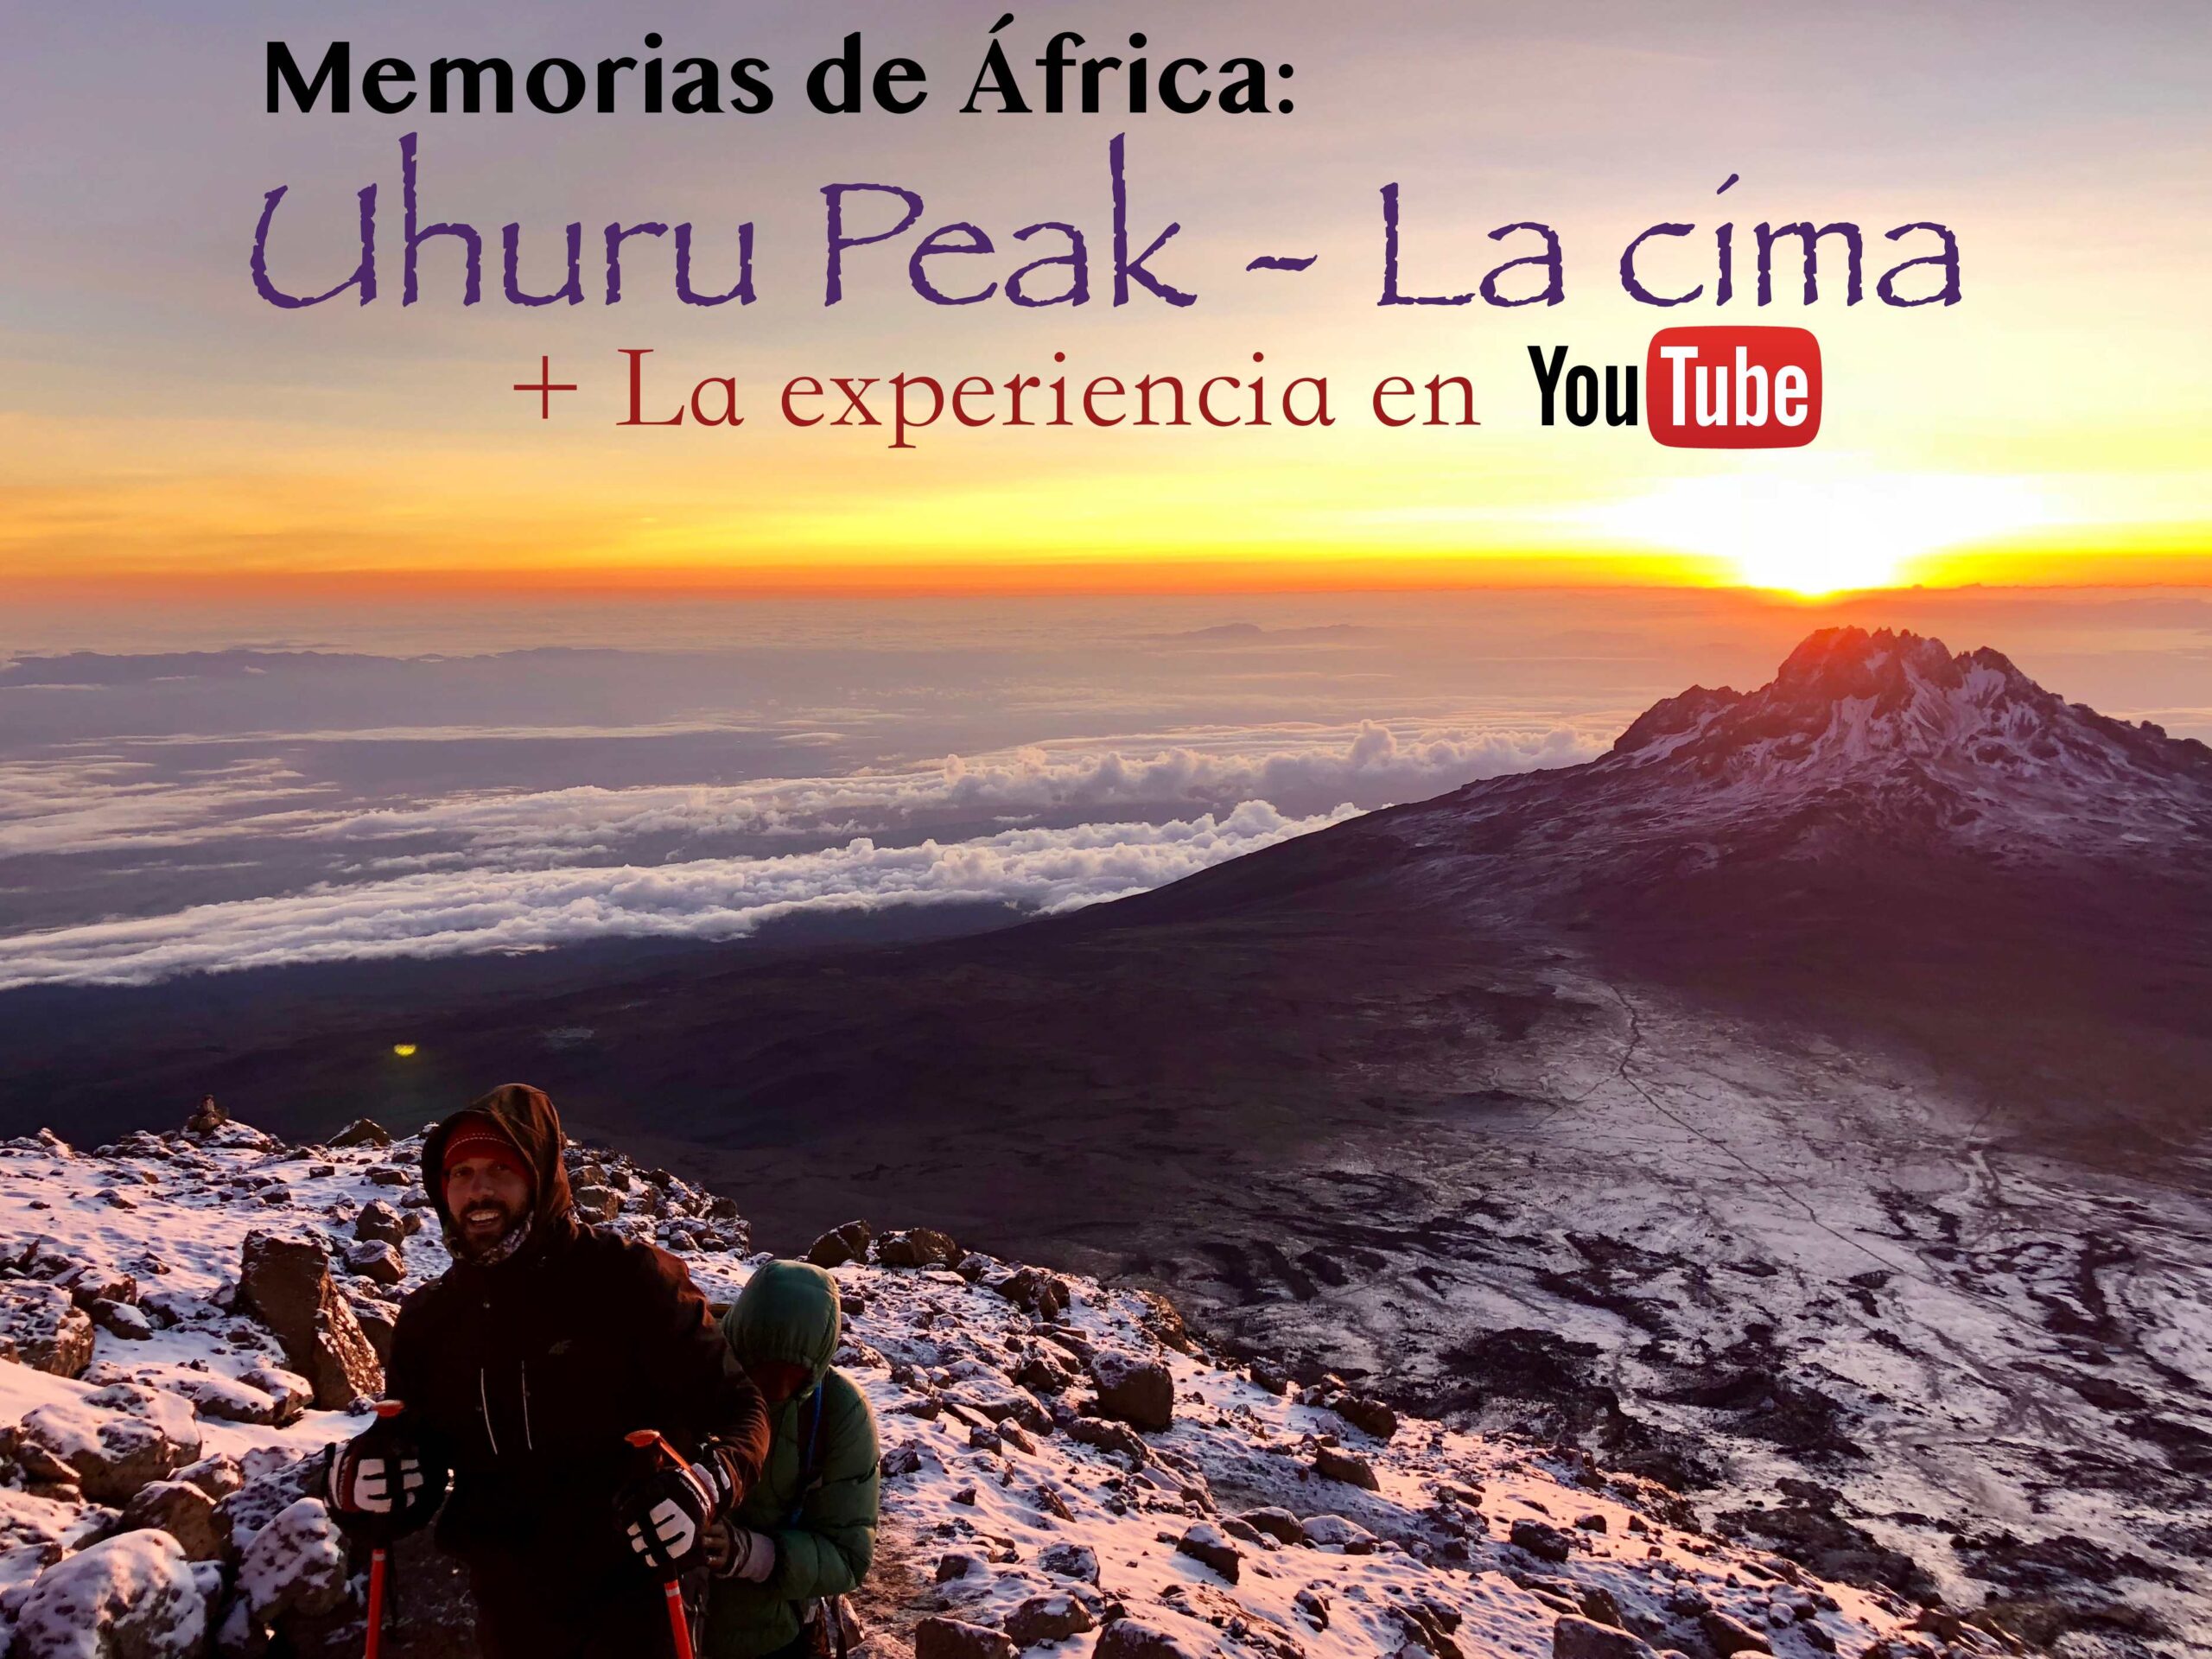 Uhuru Peak - La cima